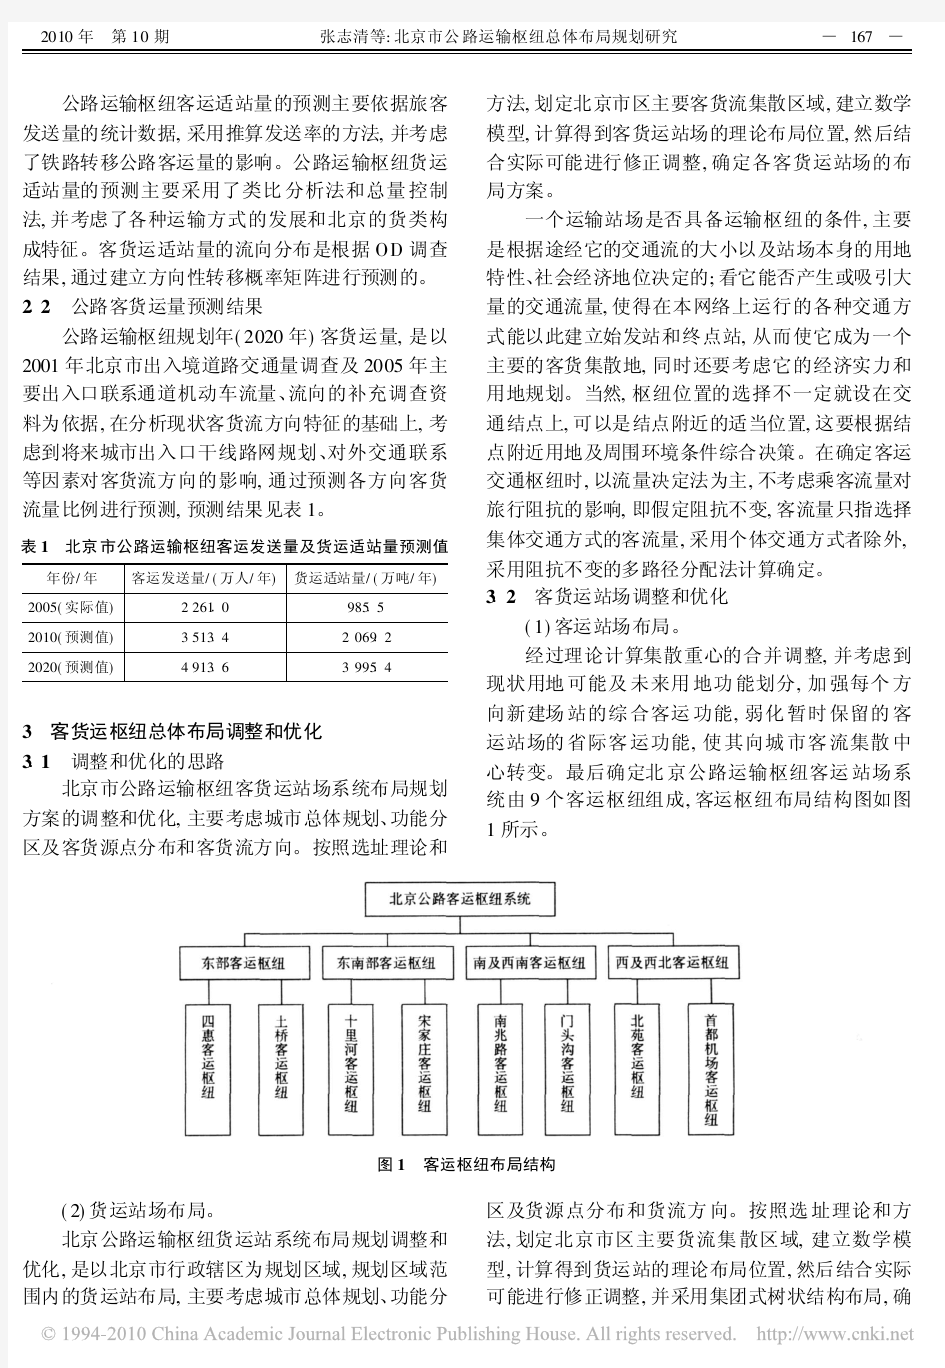 北京市公路运输枢纽总体布局规划研究